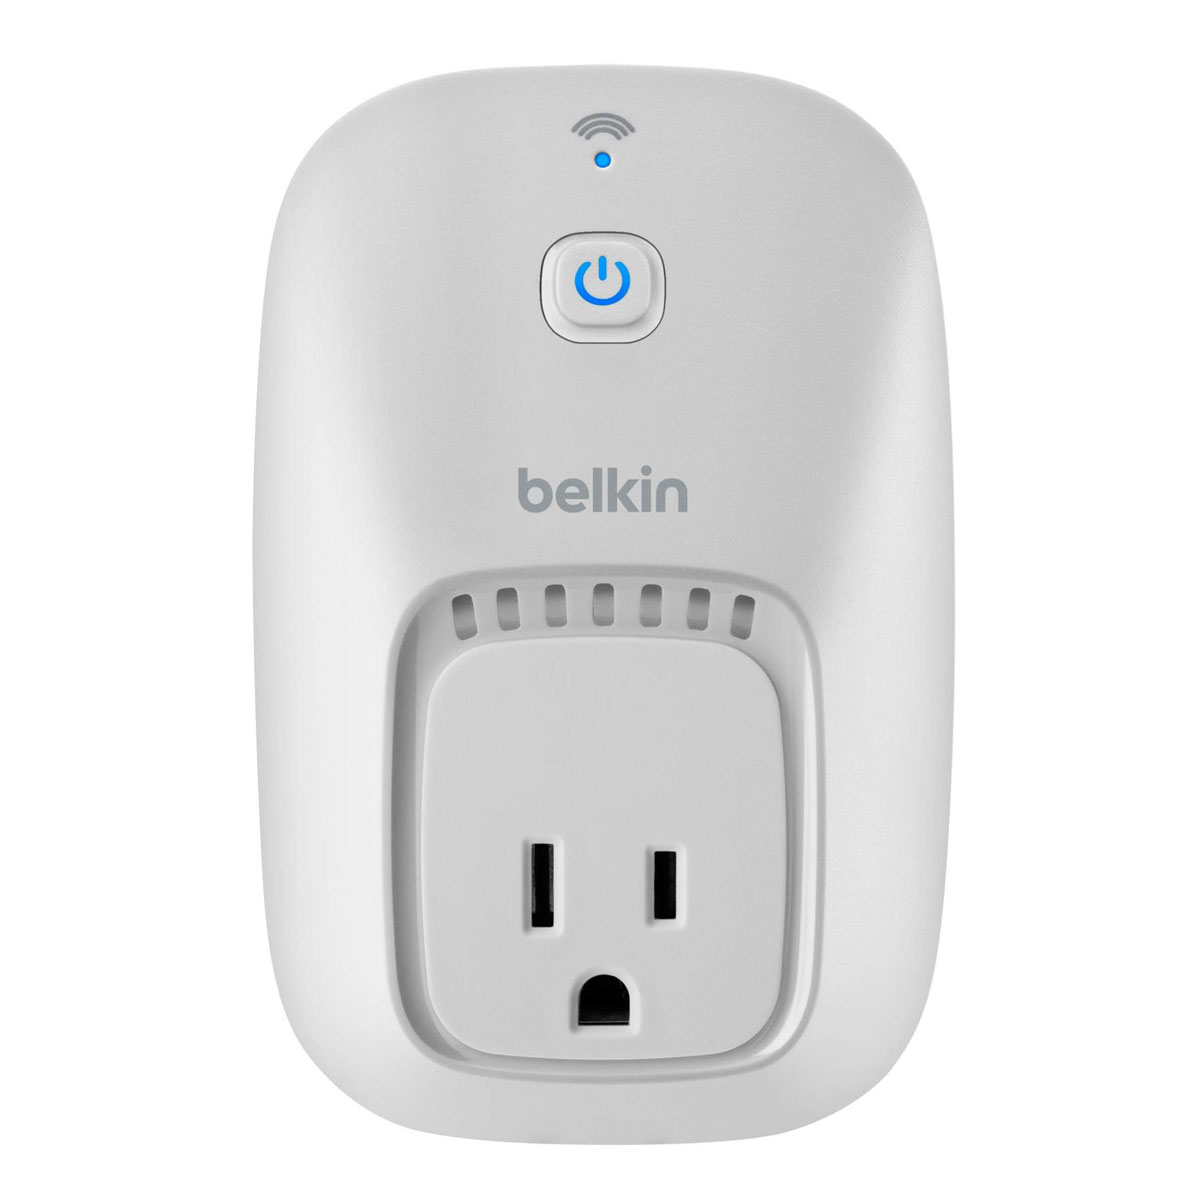 Belkin-WeMo-Wall-outlet01